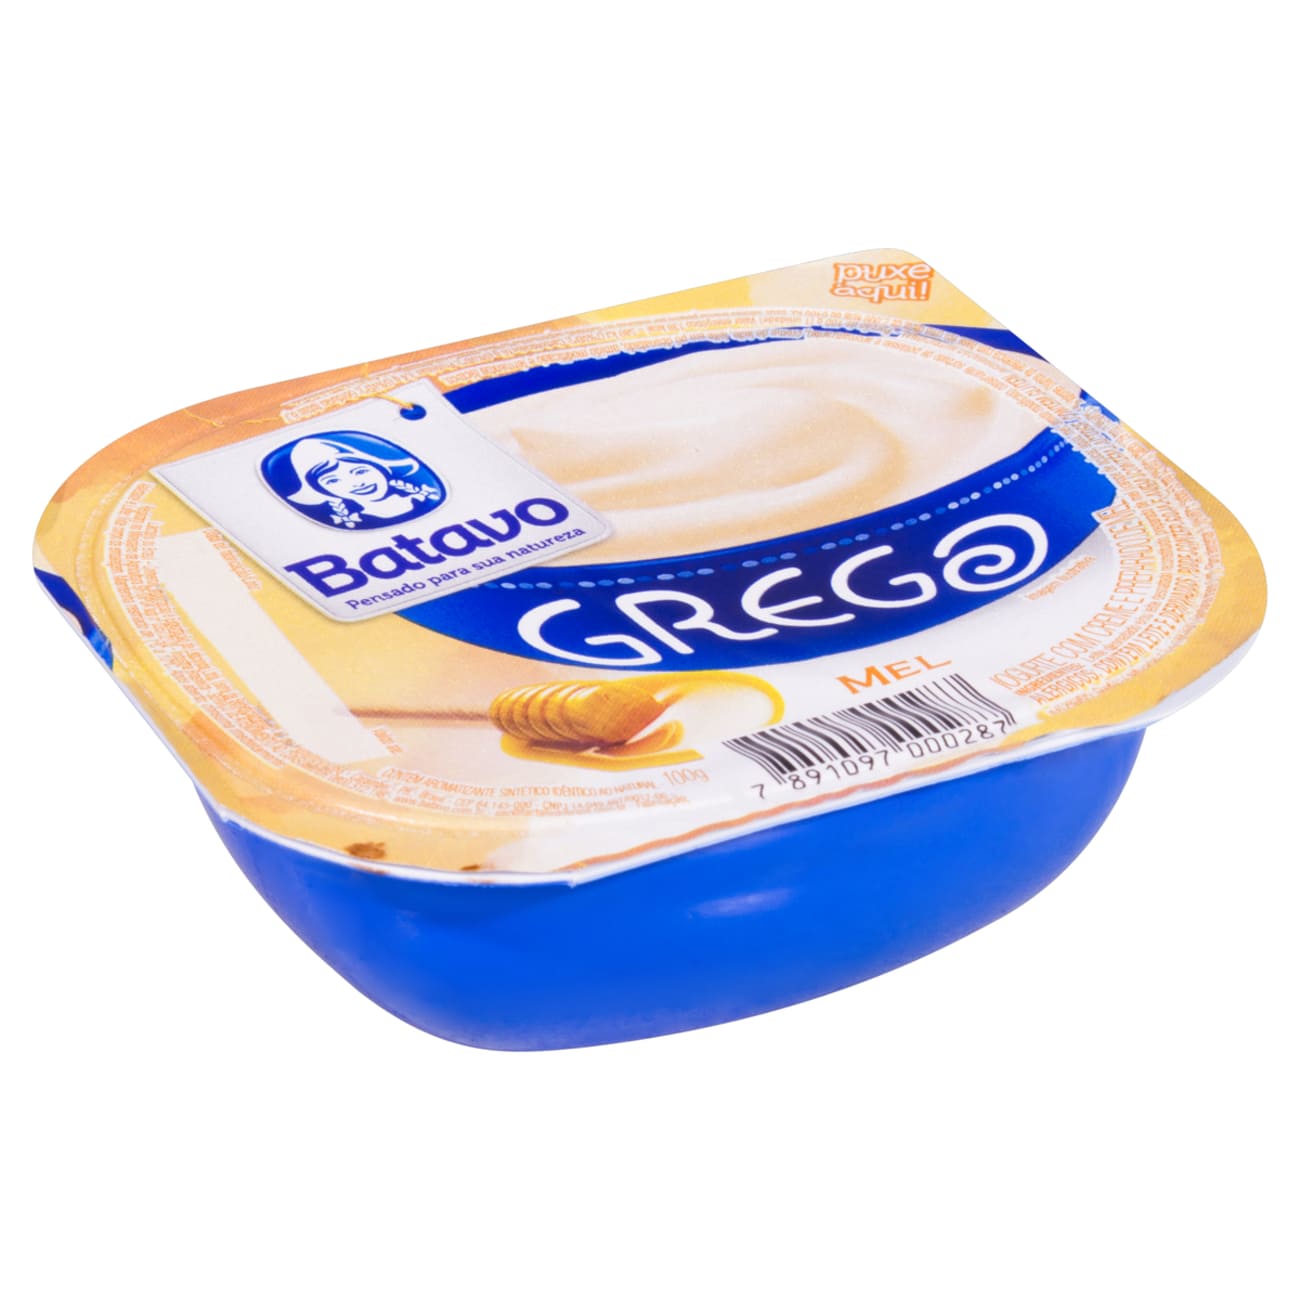 Iogurte Grego com Creme Preparado de Mel Batavo Pote 100g